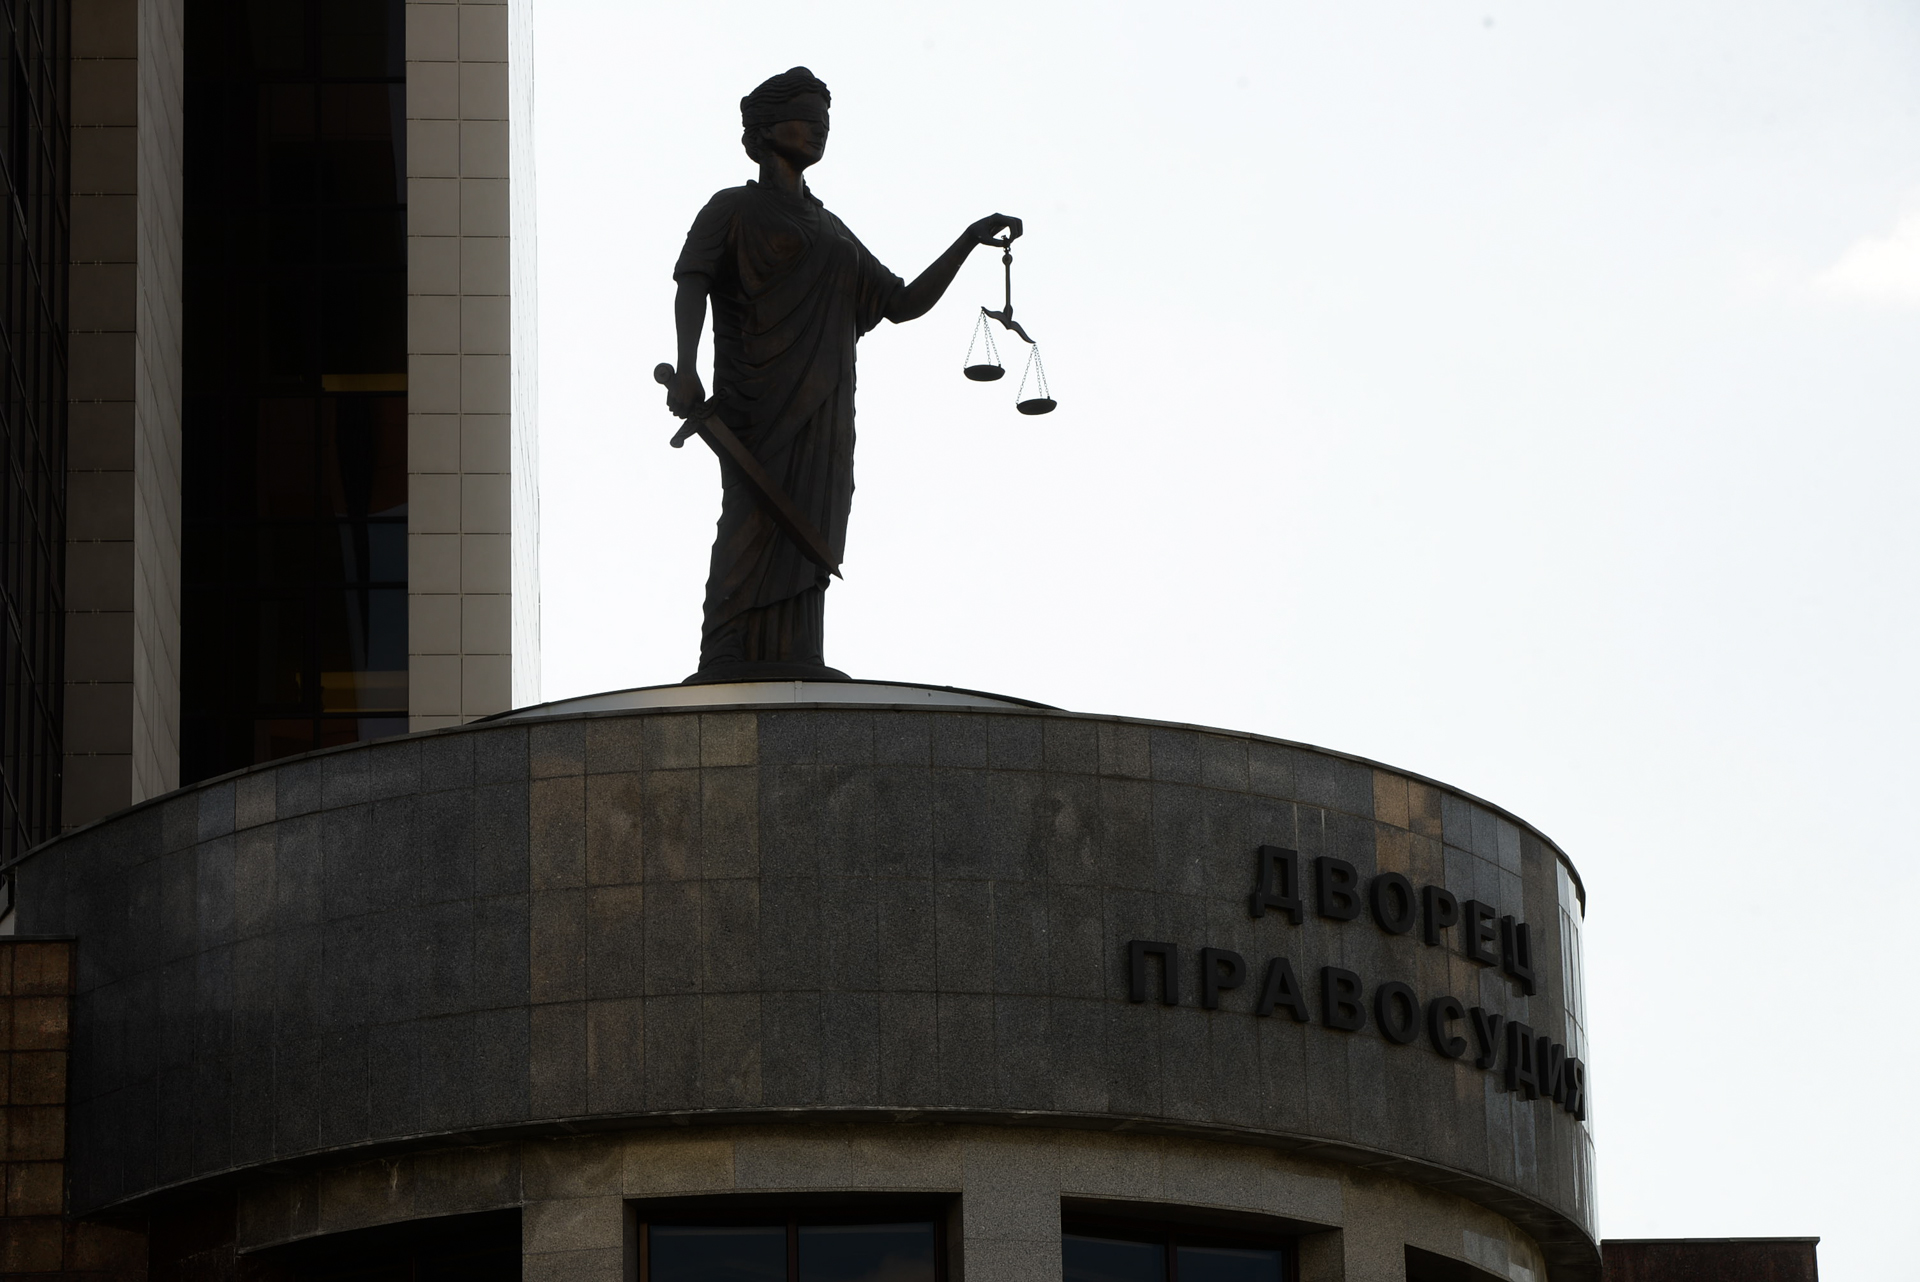 Оперативникам из Каменска-Уральского, осужденным за издевательства над детьми, отменили приговор